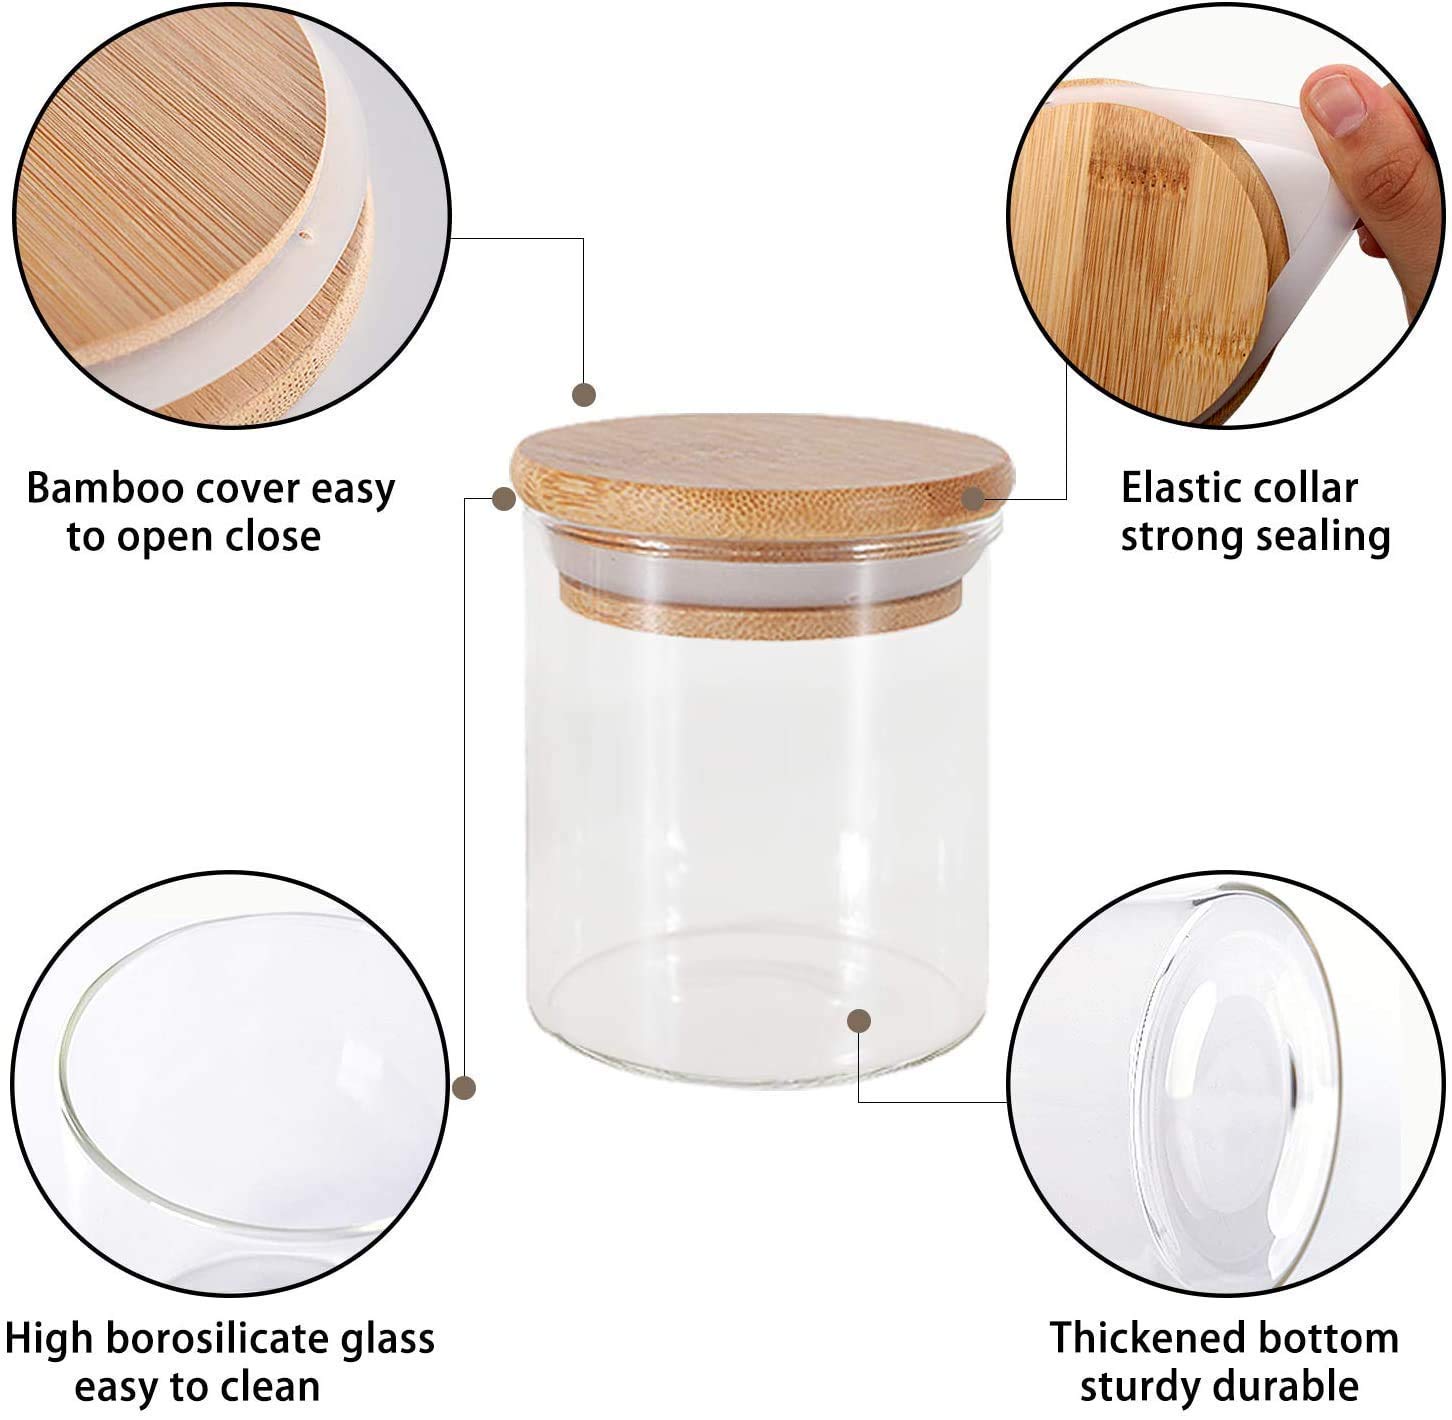 Bộ 6 lọ đựng thủy tinh nắp gỗ Glass Jar Container 300 ml